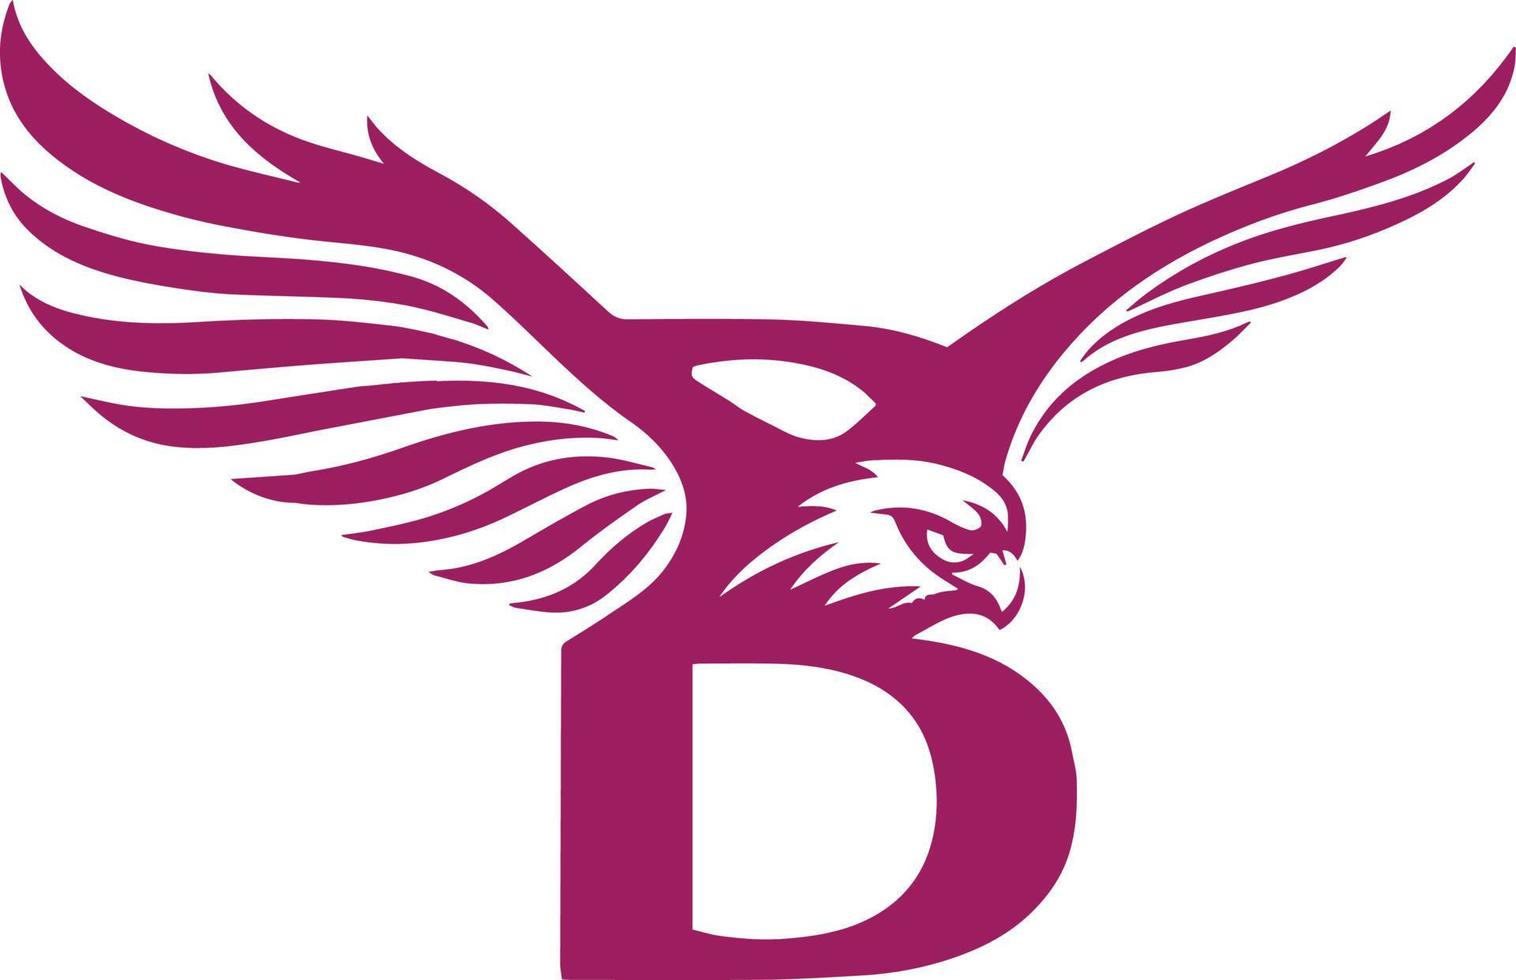 b letra águia ícone logotipo criativo ilustração vetorial de cabeça de águia imagem vetorial de estoque e arte vetor